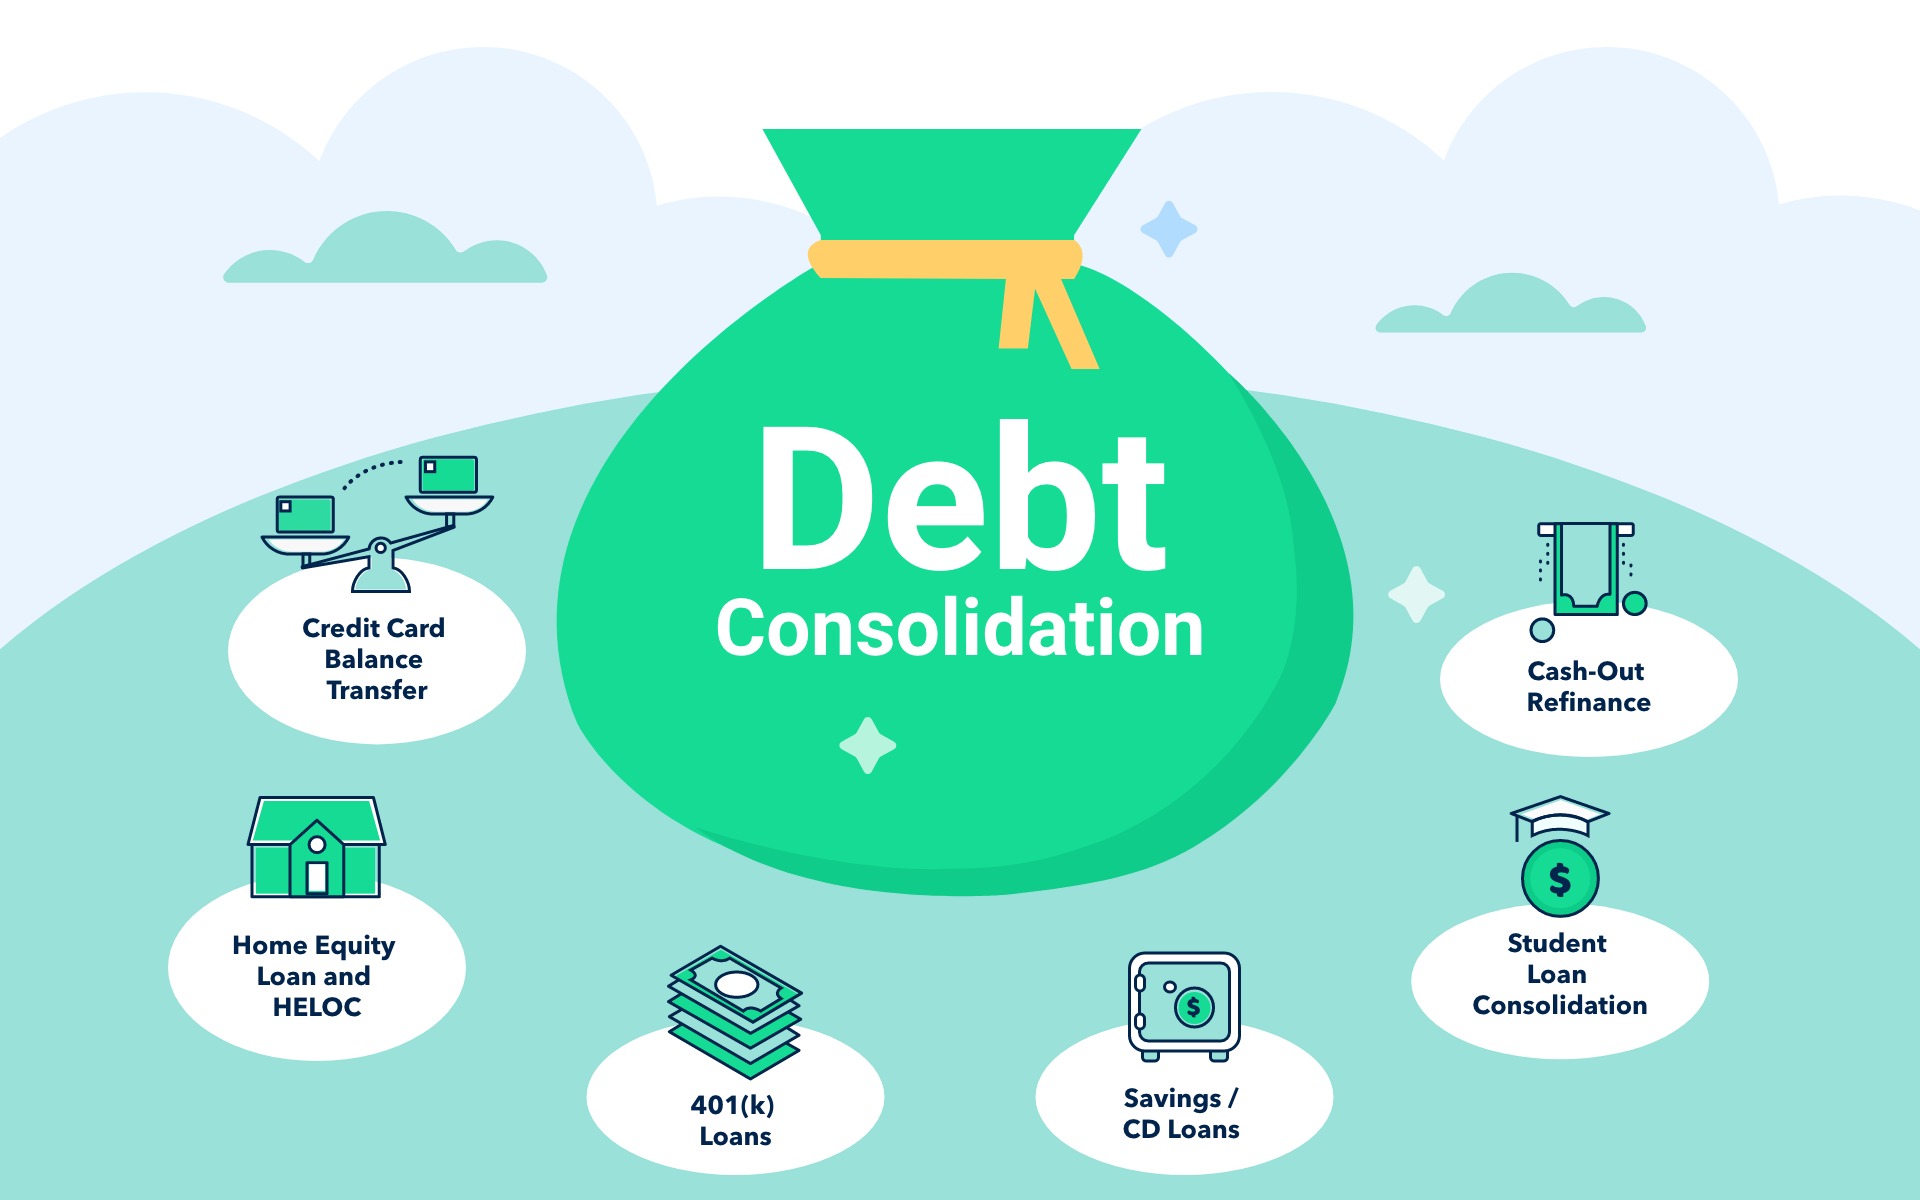 How Do Debt Consolidation Companies Make Money